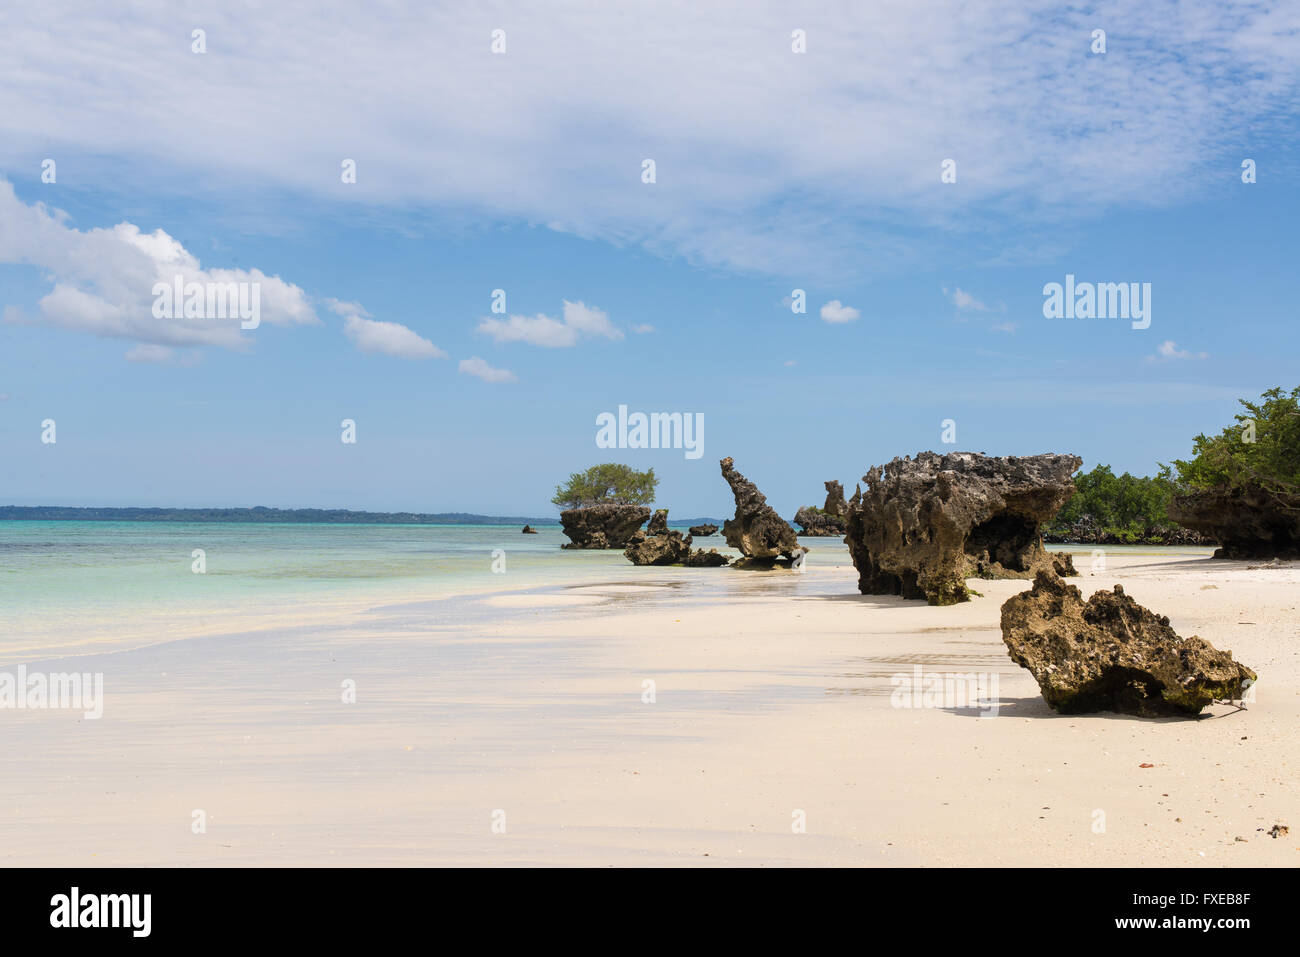 Bianca incontaminata spiaggia tropicale con rocce, mare azzurro e vegetazione lussureggiante sull'isola africana di misali, Pemba, Zanzibar. Foto Stock